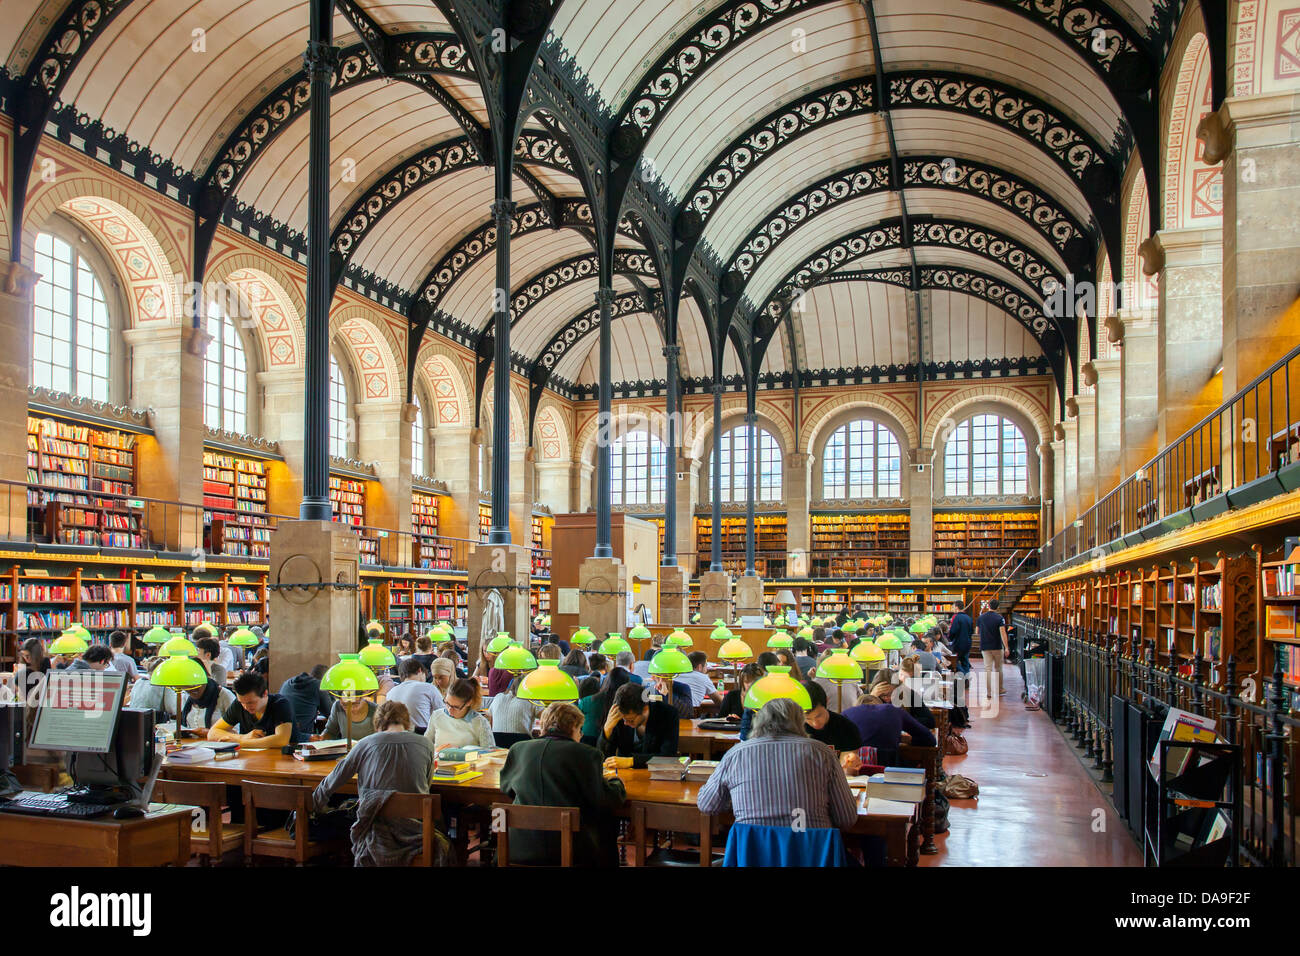 Pleine place à la Bibliotheque Sainte Genevieve - bibliothèque publique  dans le Quartier Latin, Paris France Photo Stock - Alamy